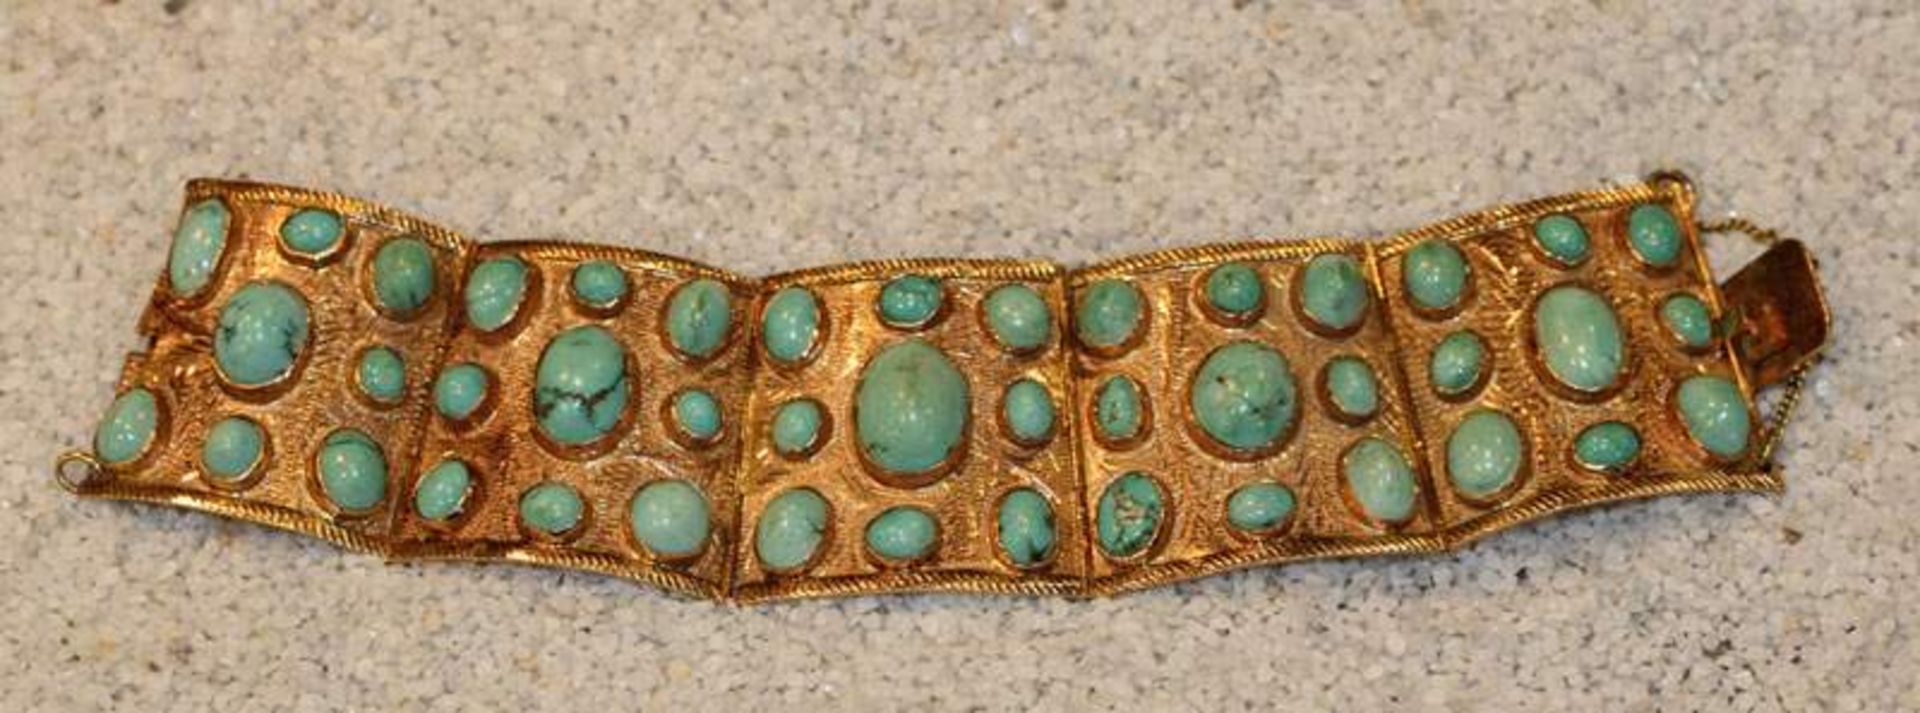 14 k Gelbgold Armband mit verschieden großen Türkisen besetzt, fein graviert, 59,7 gr., D 6 cm,